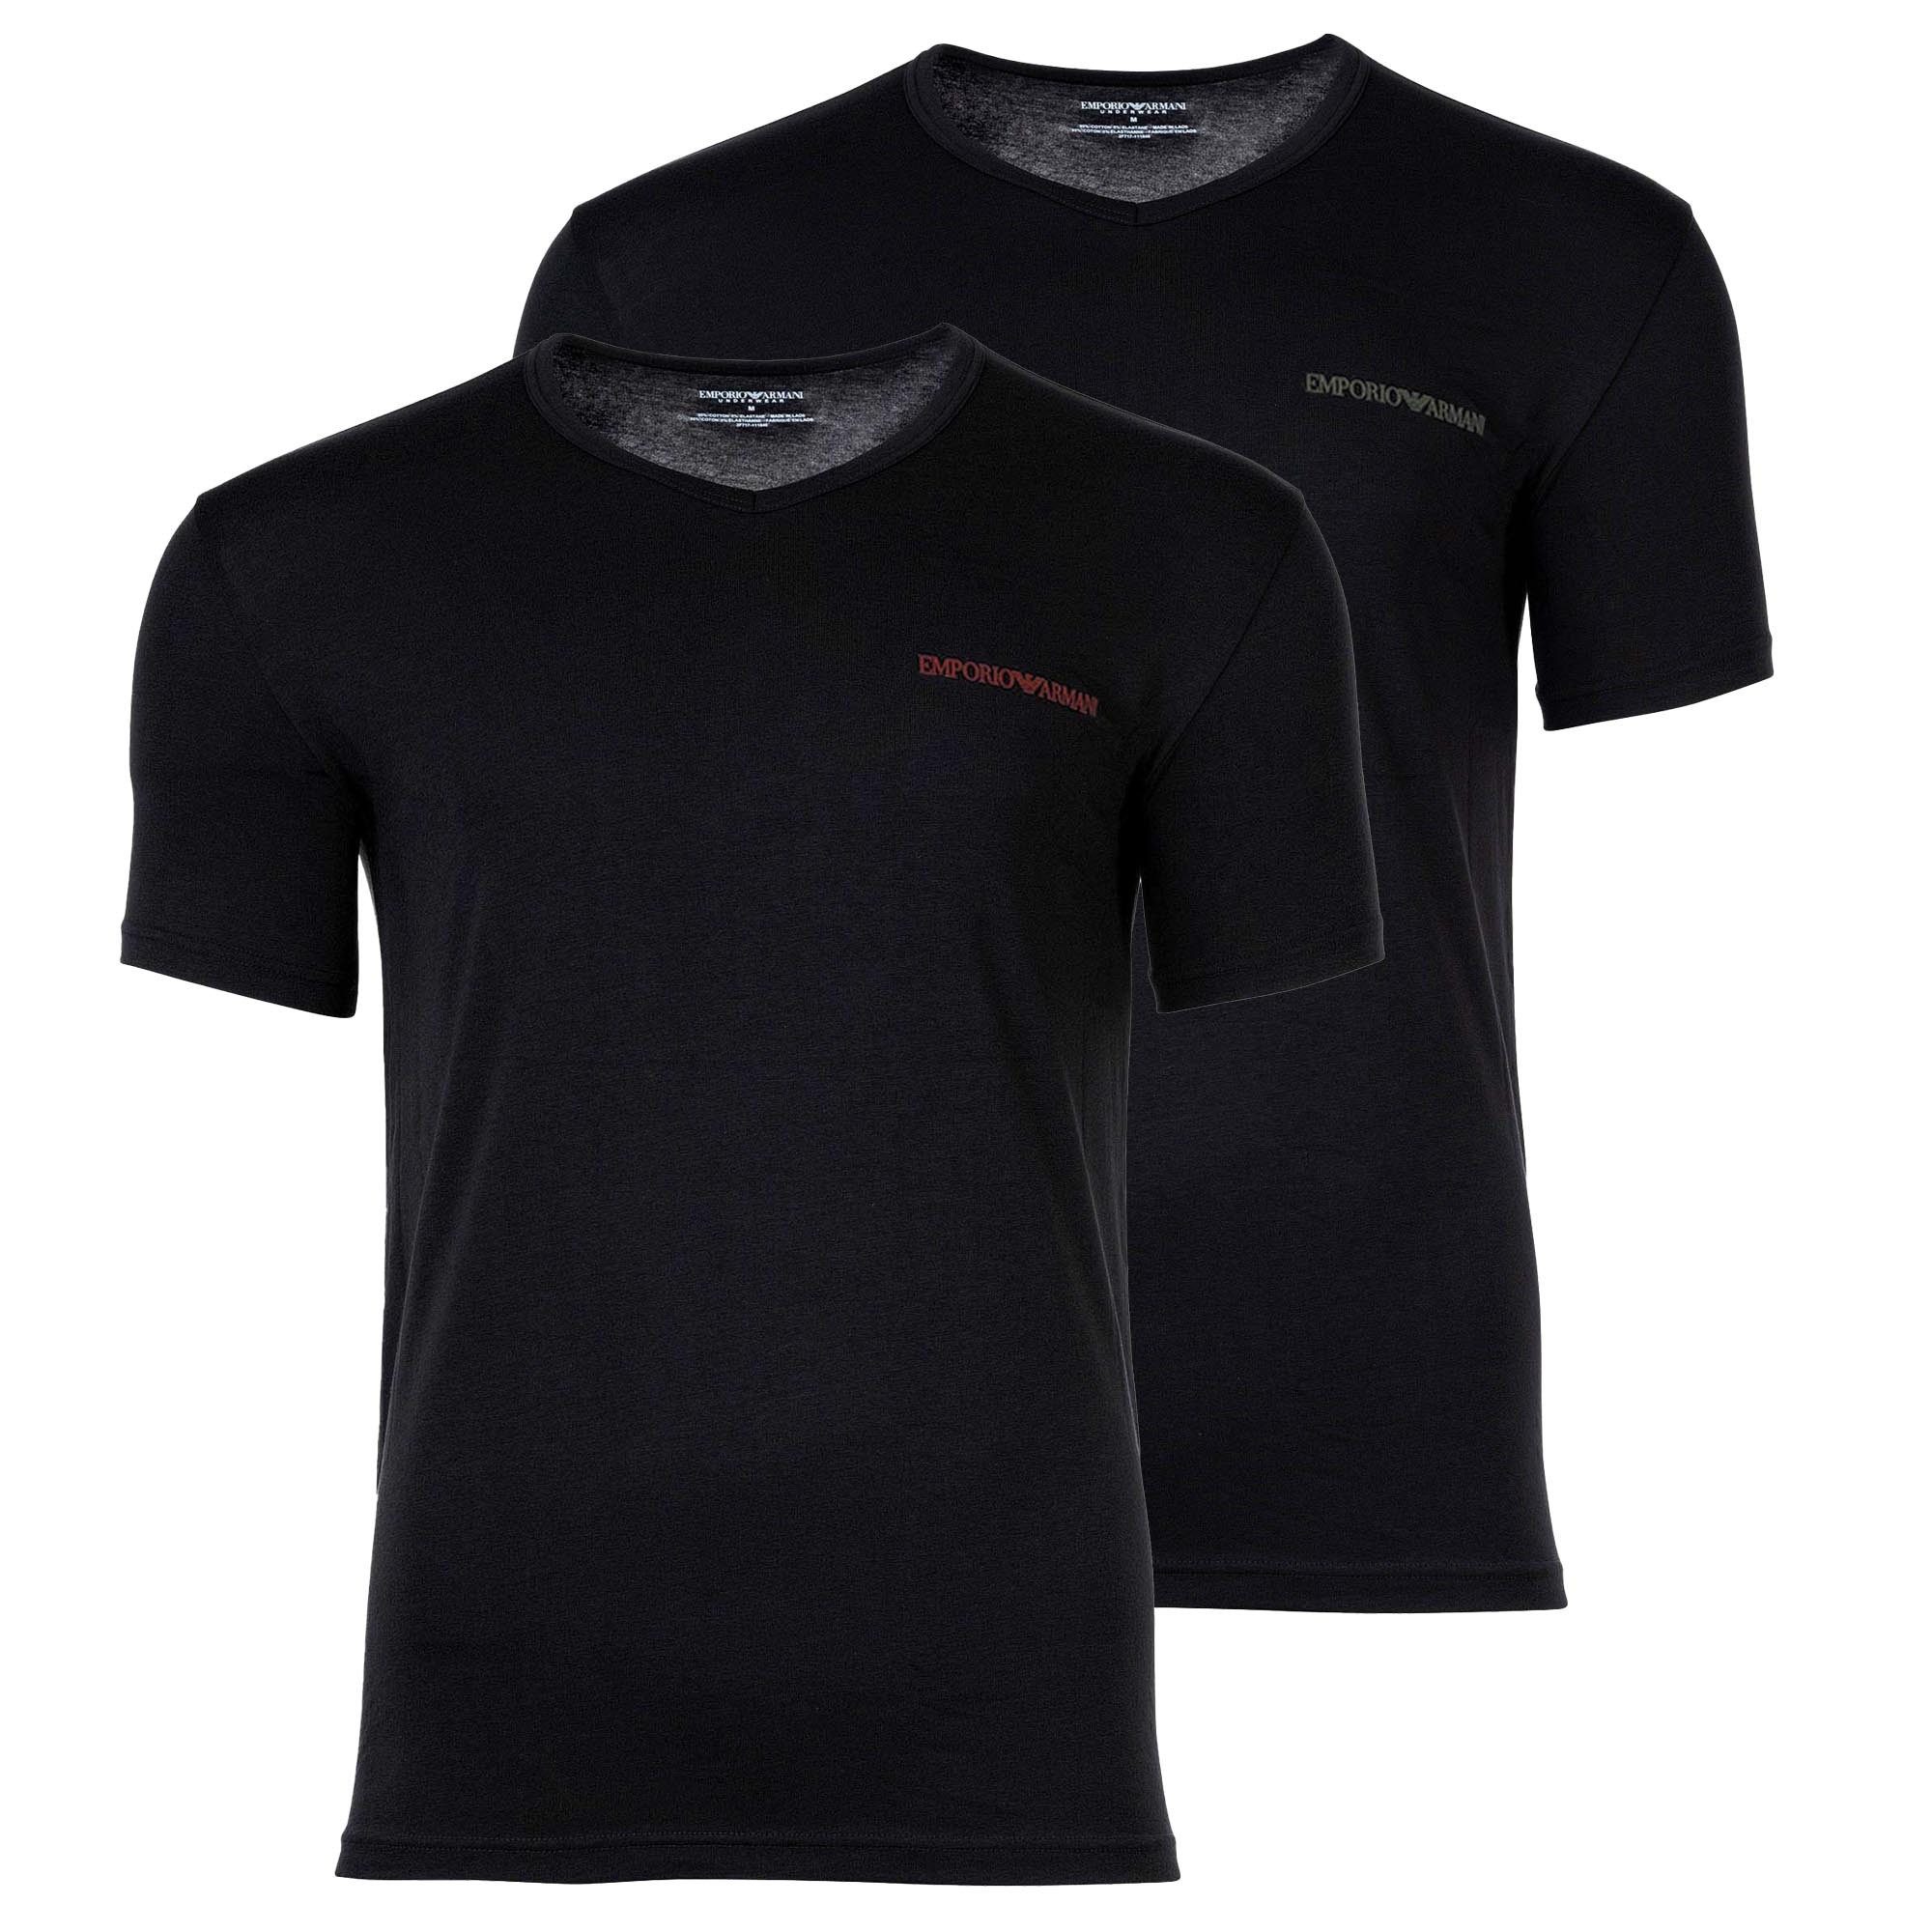 Emporio Armani T-Shirt Herren T-Shirt, 2er Pack - CORE LOGOBAND, V-Neck